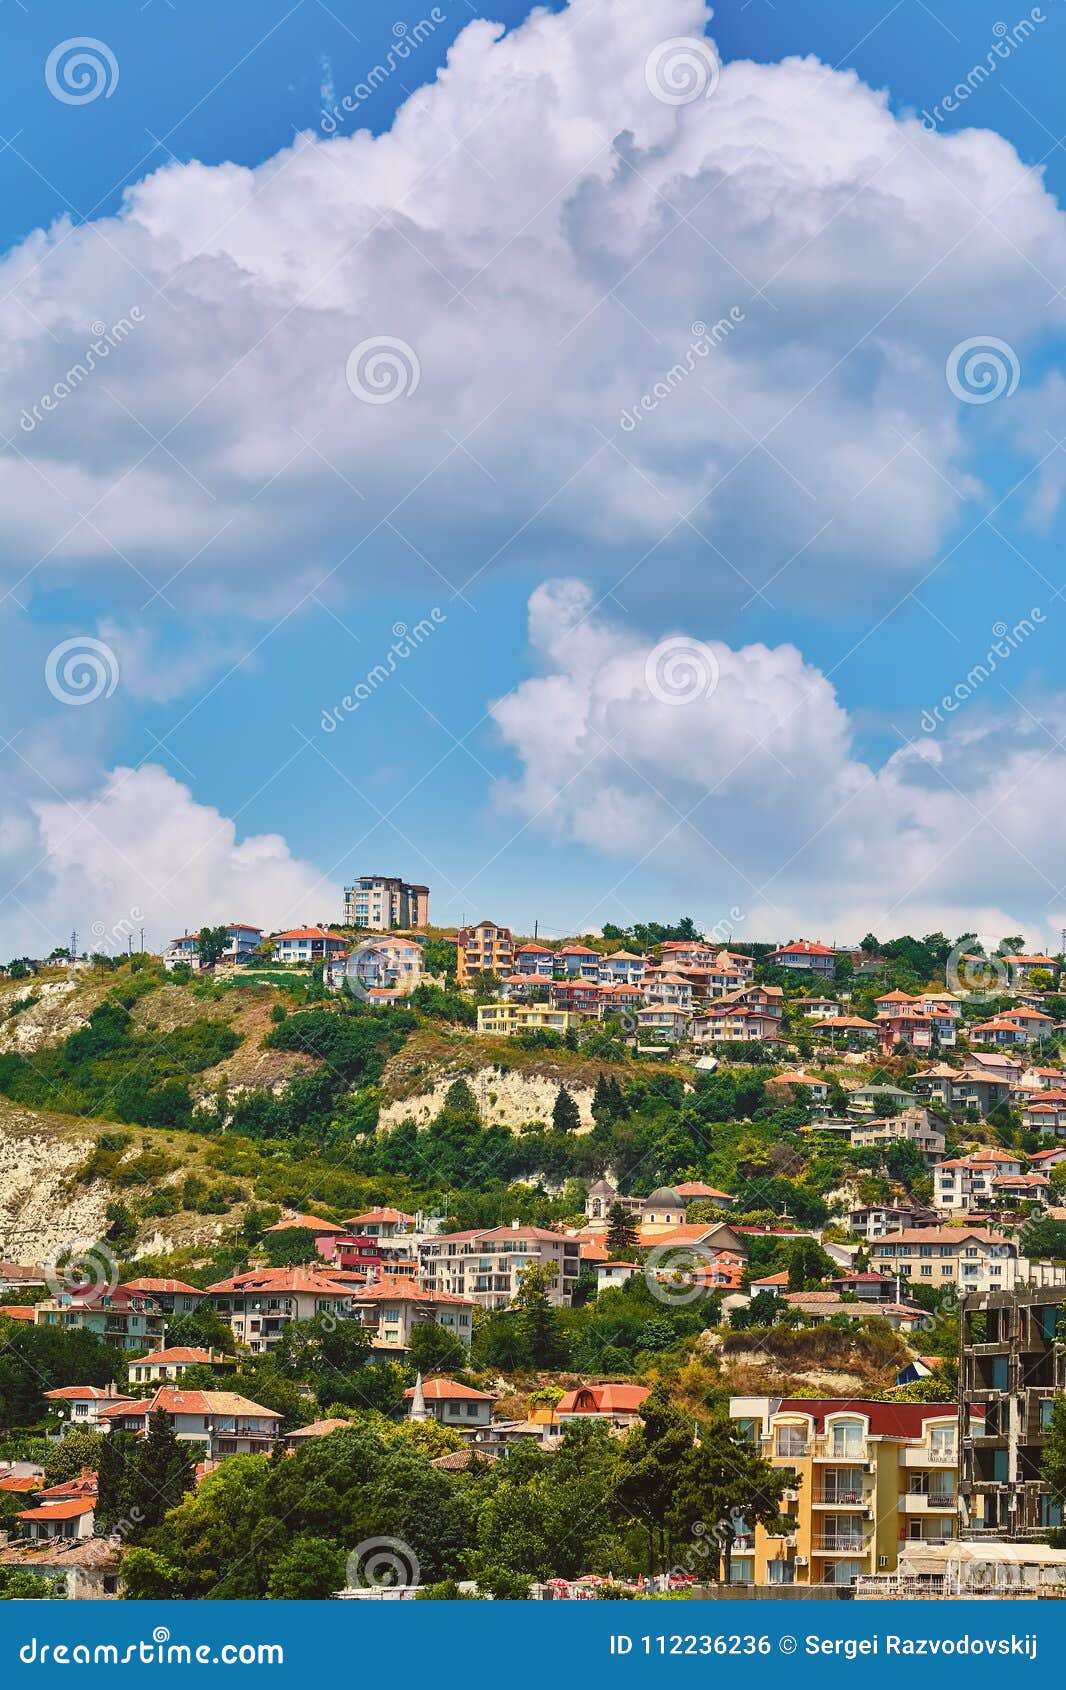 Petite ville en Bulgarie. Chambres de petite ville Balchik sur la pente d'une colline en Bulgarie